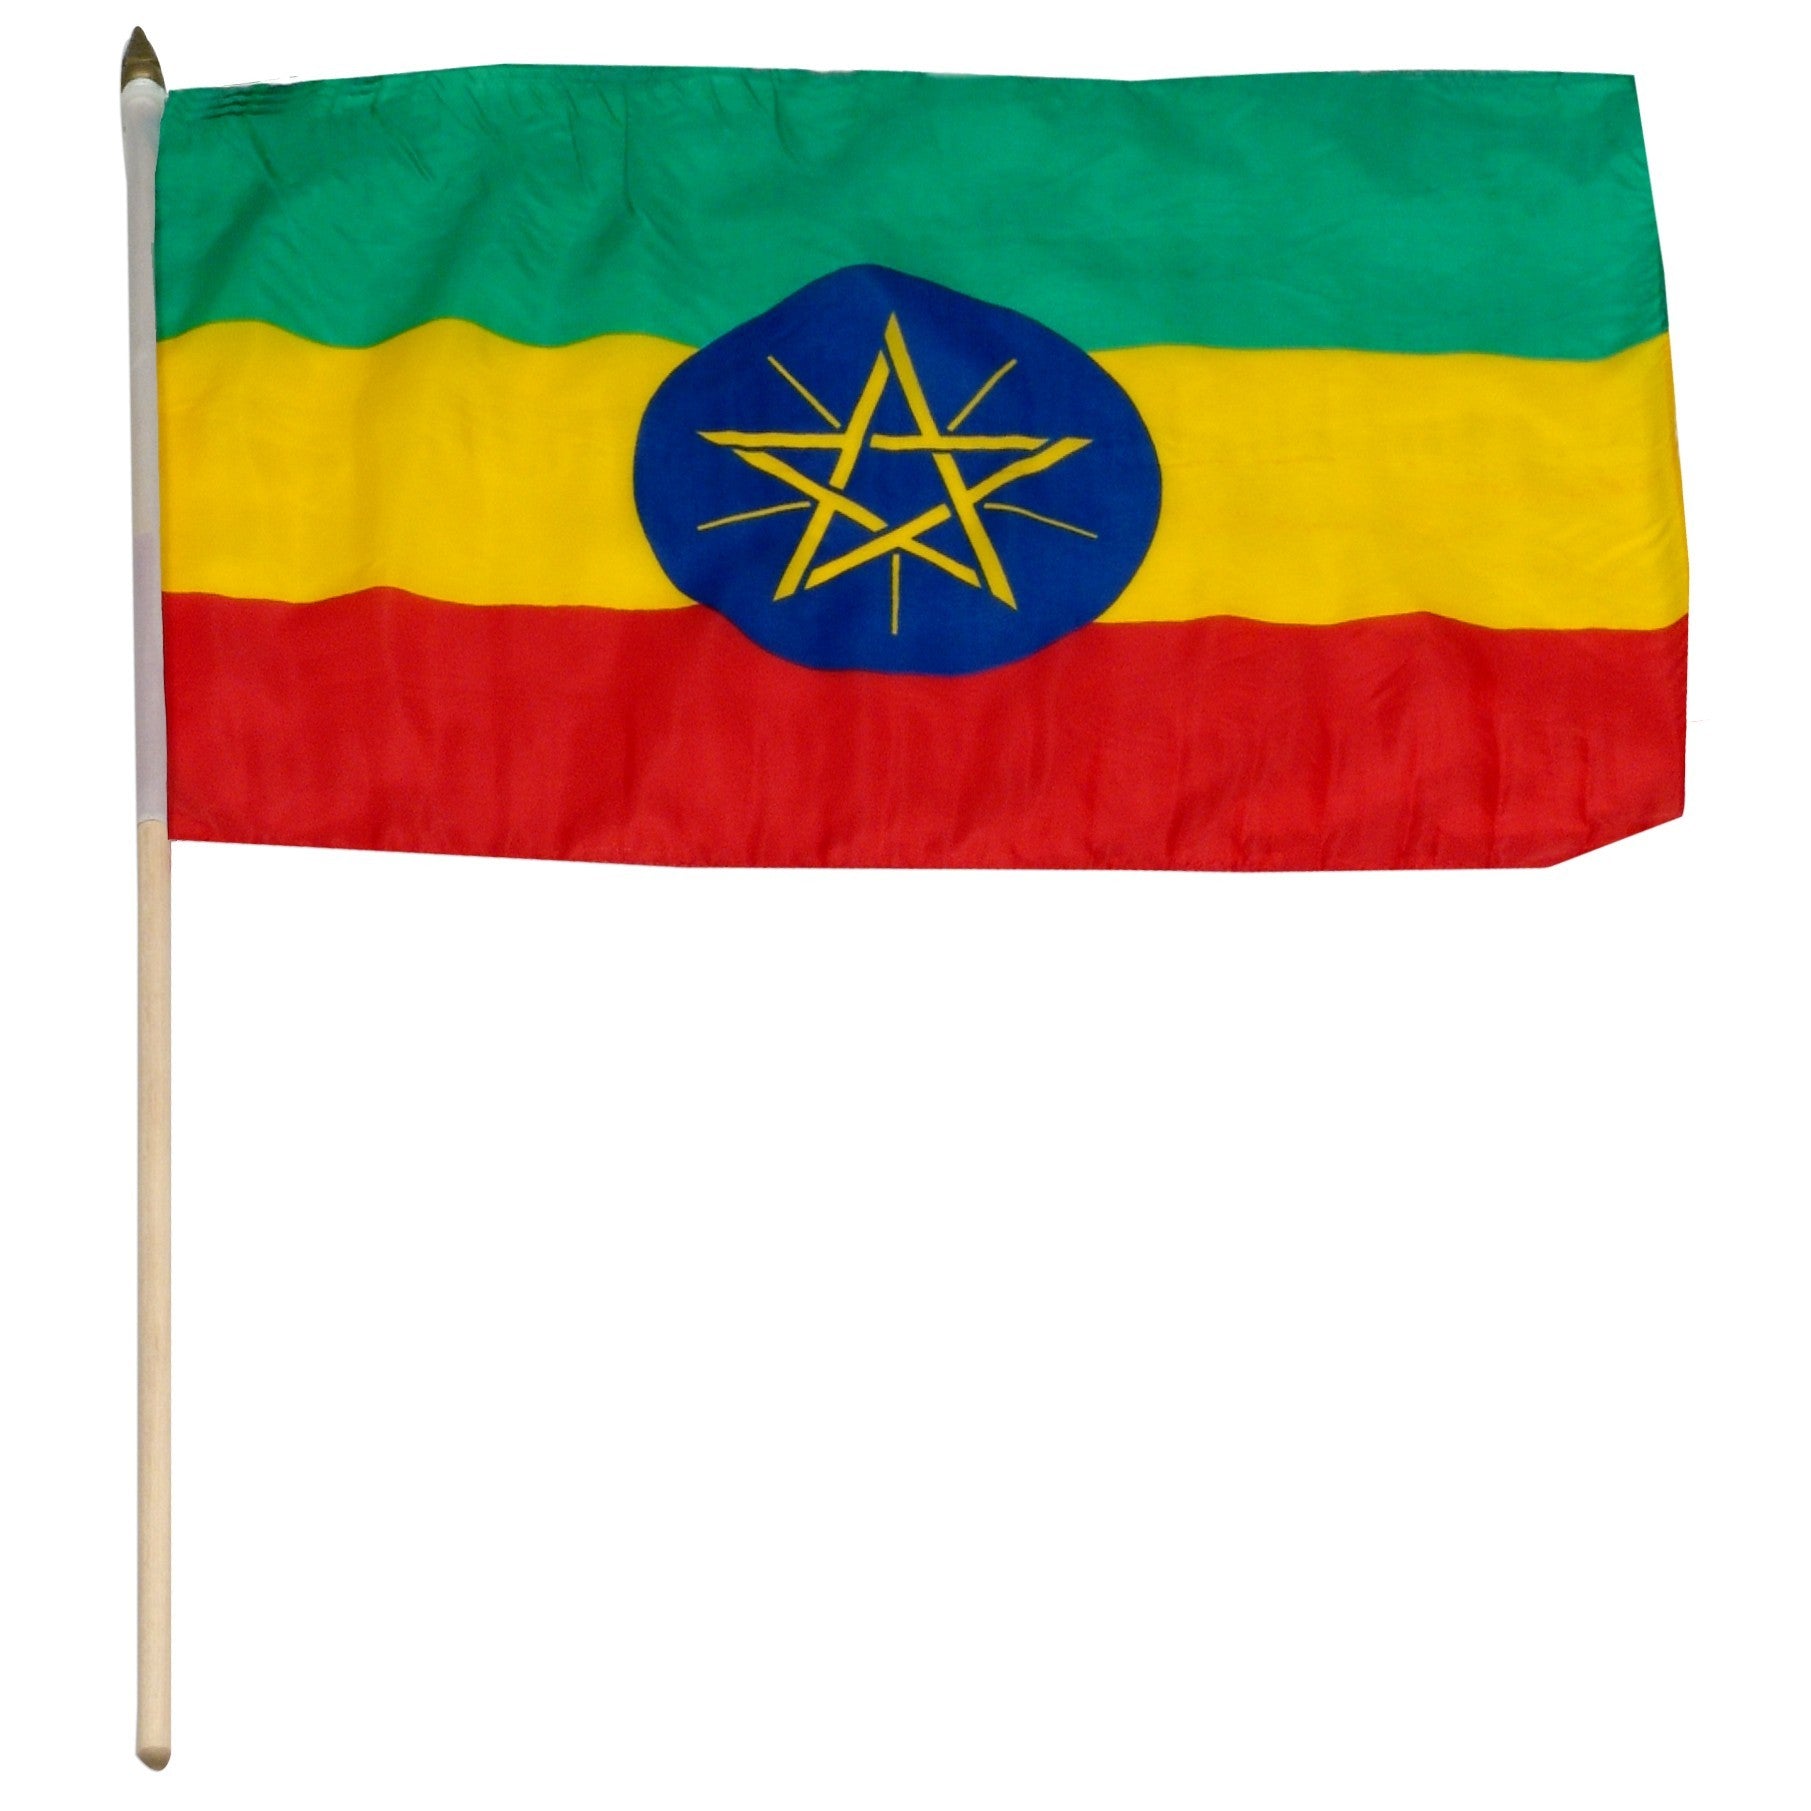 Ethiopia 12" x 18" Mounted Flag